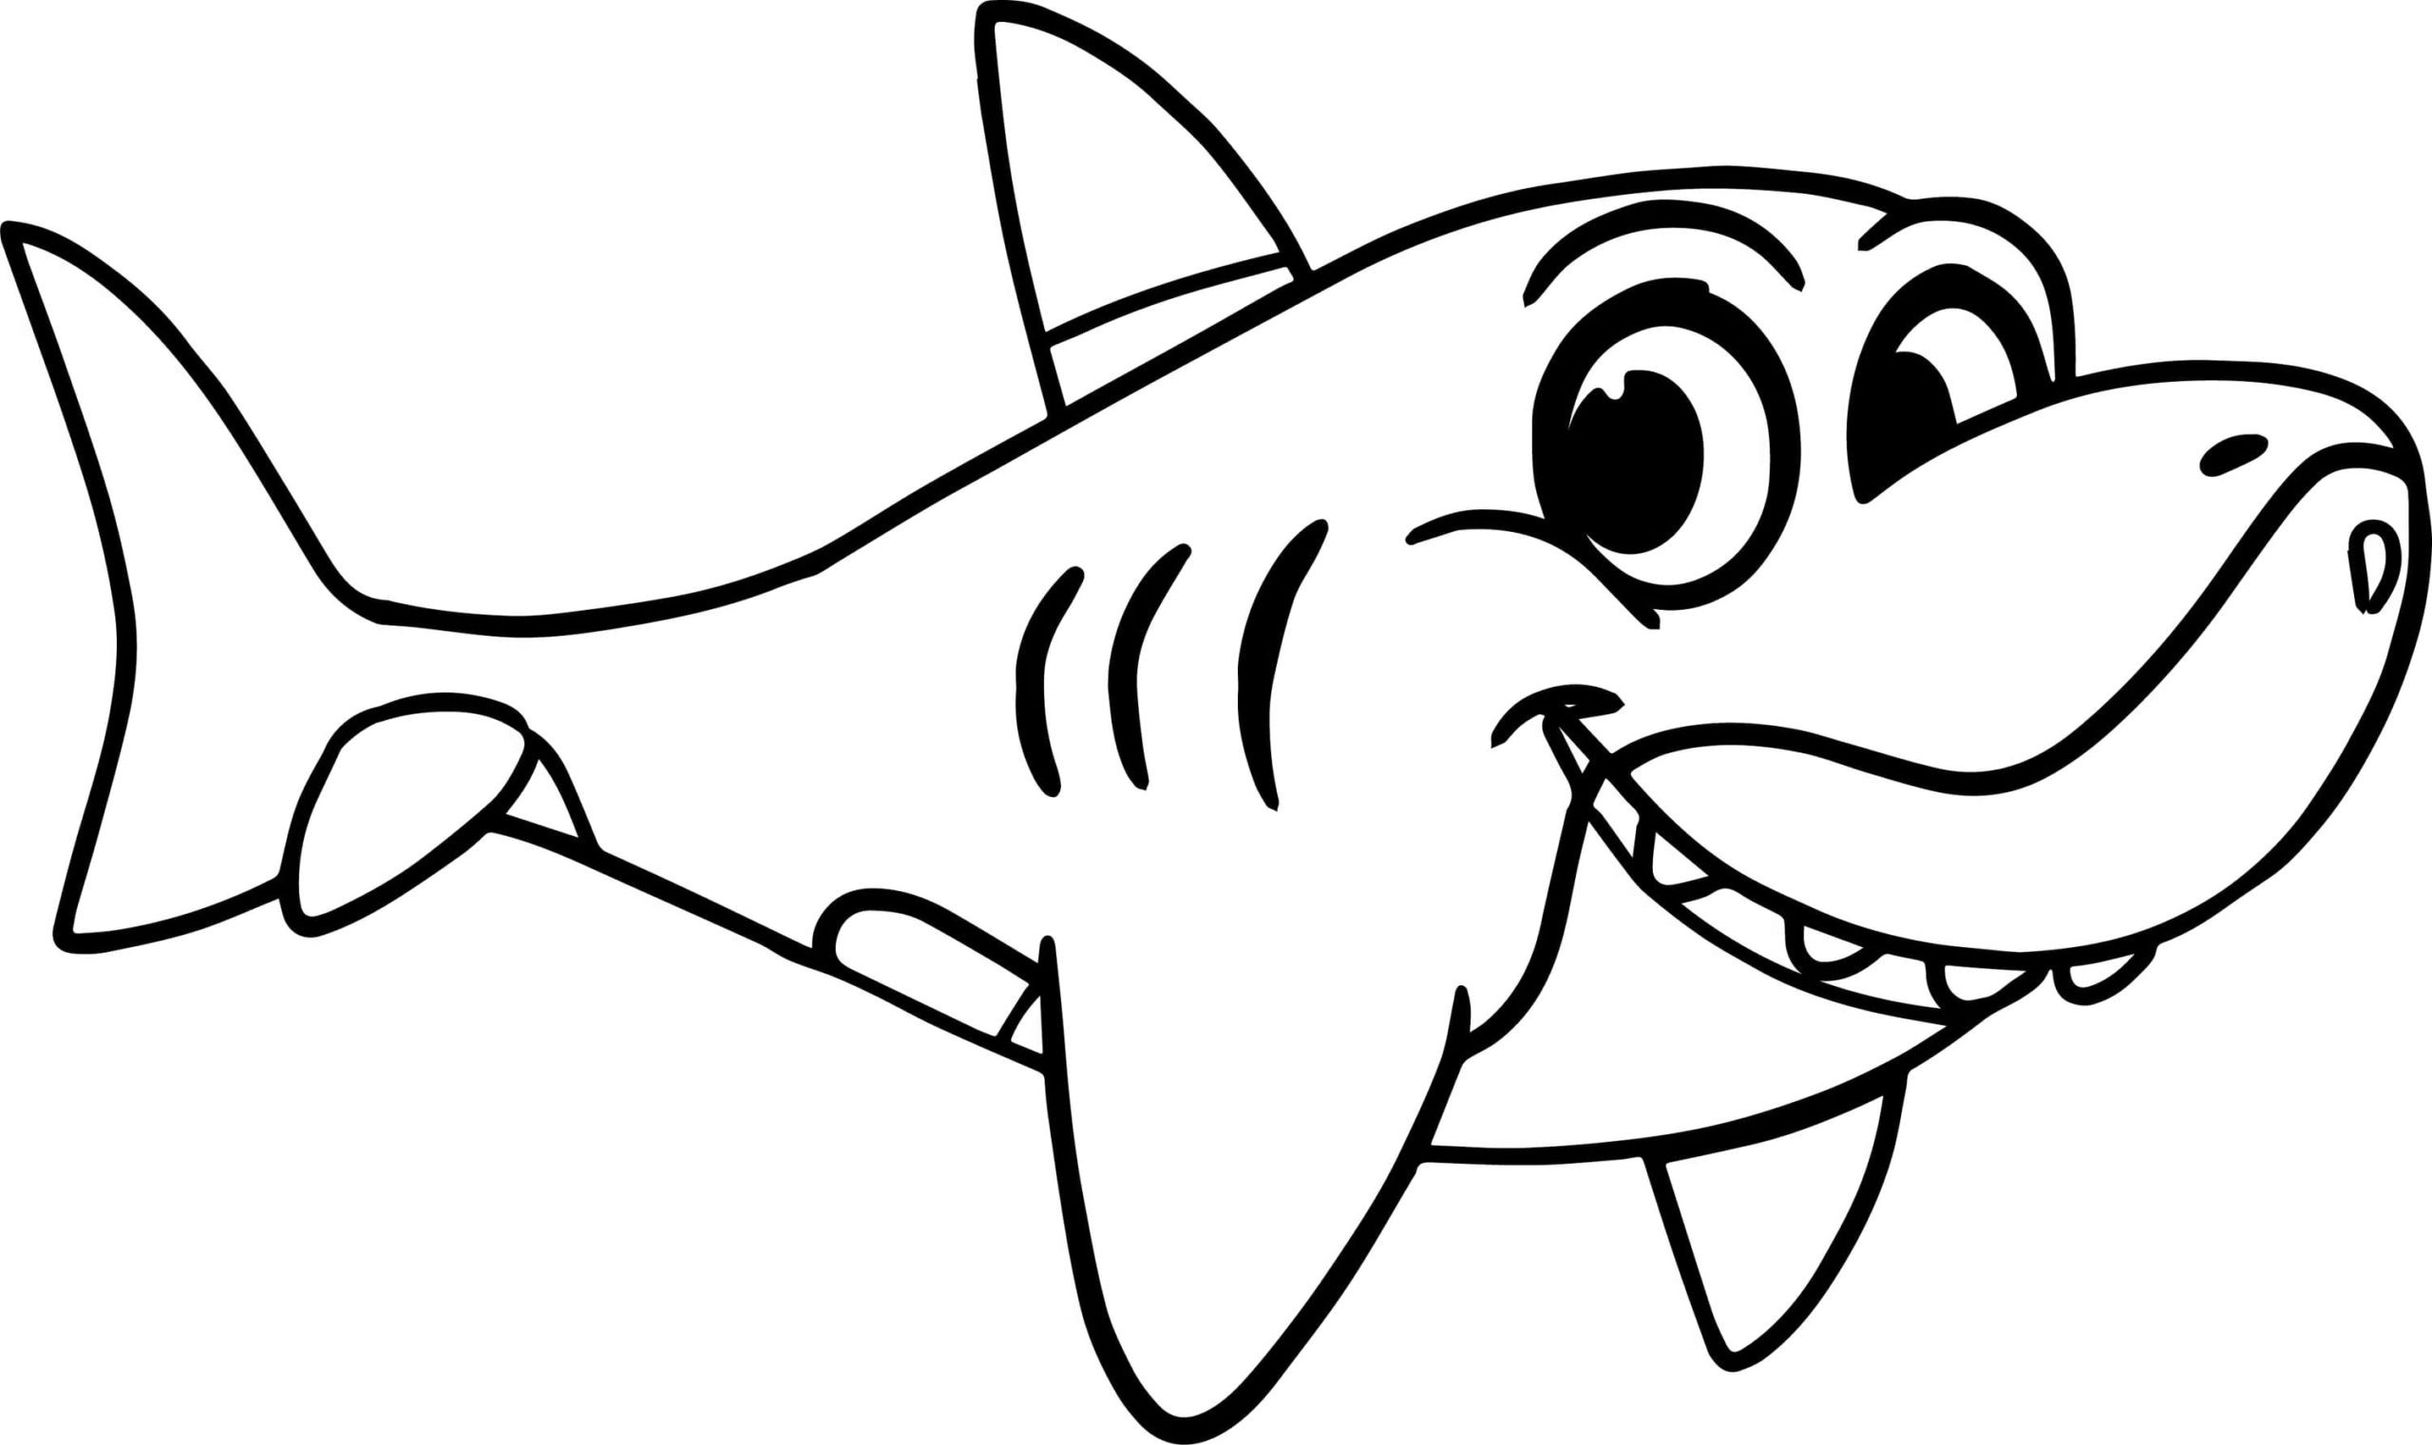 Como desenhar um tubarão passo a passo com a boca aberta - FACIL